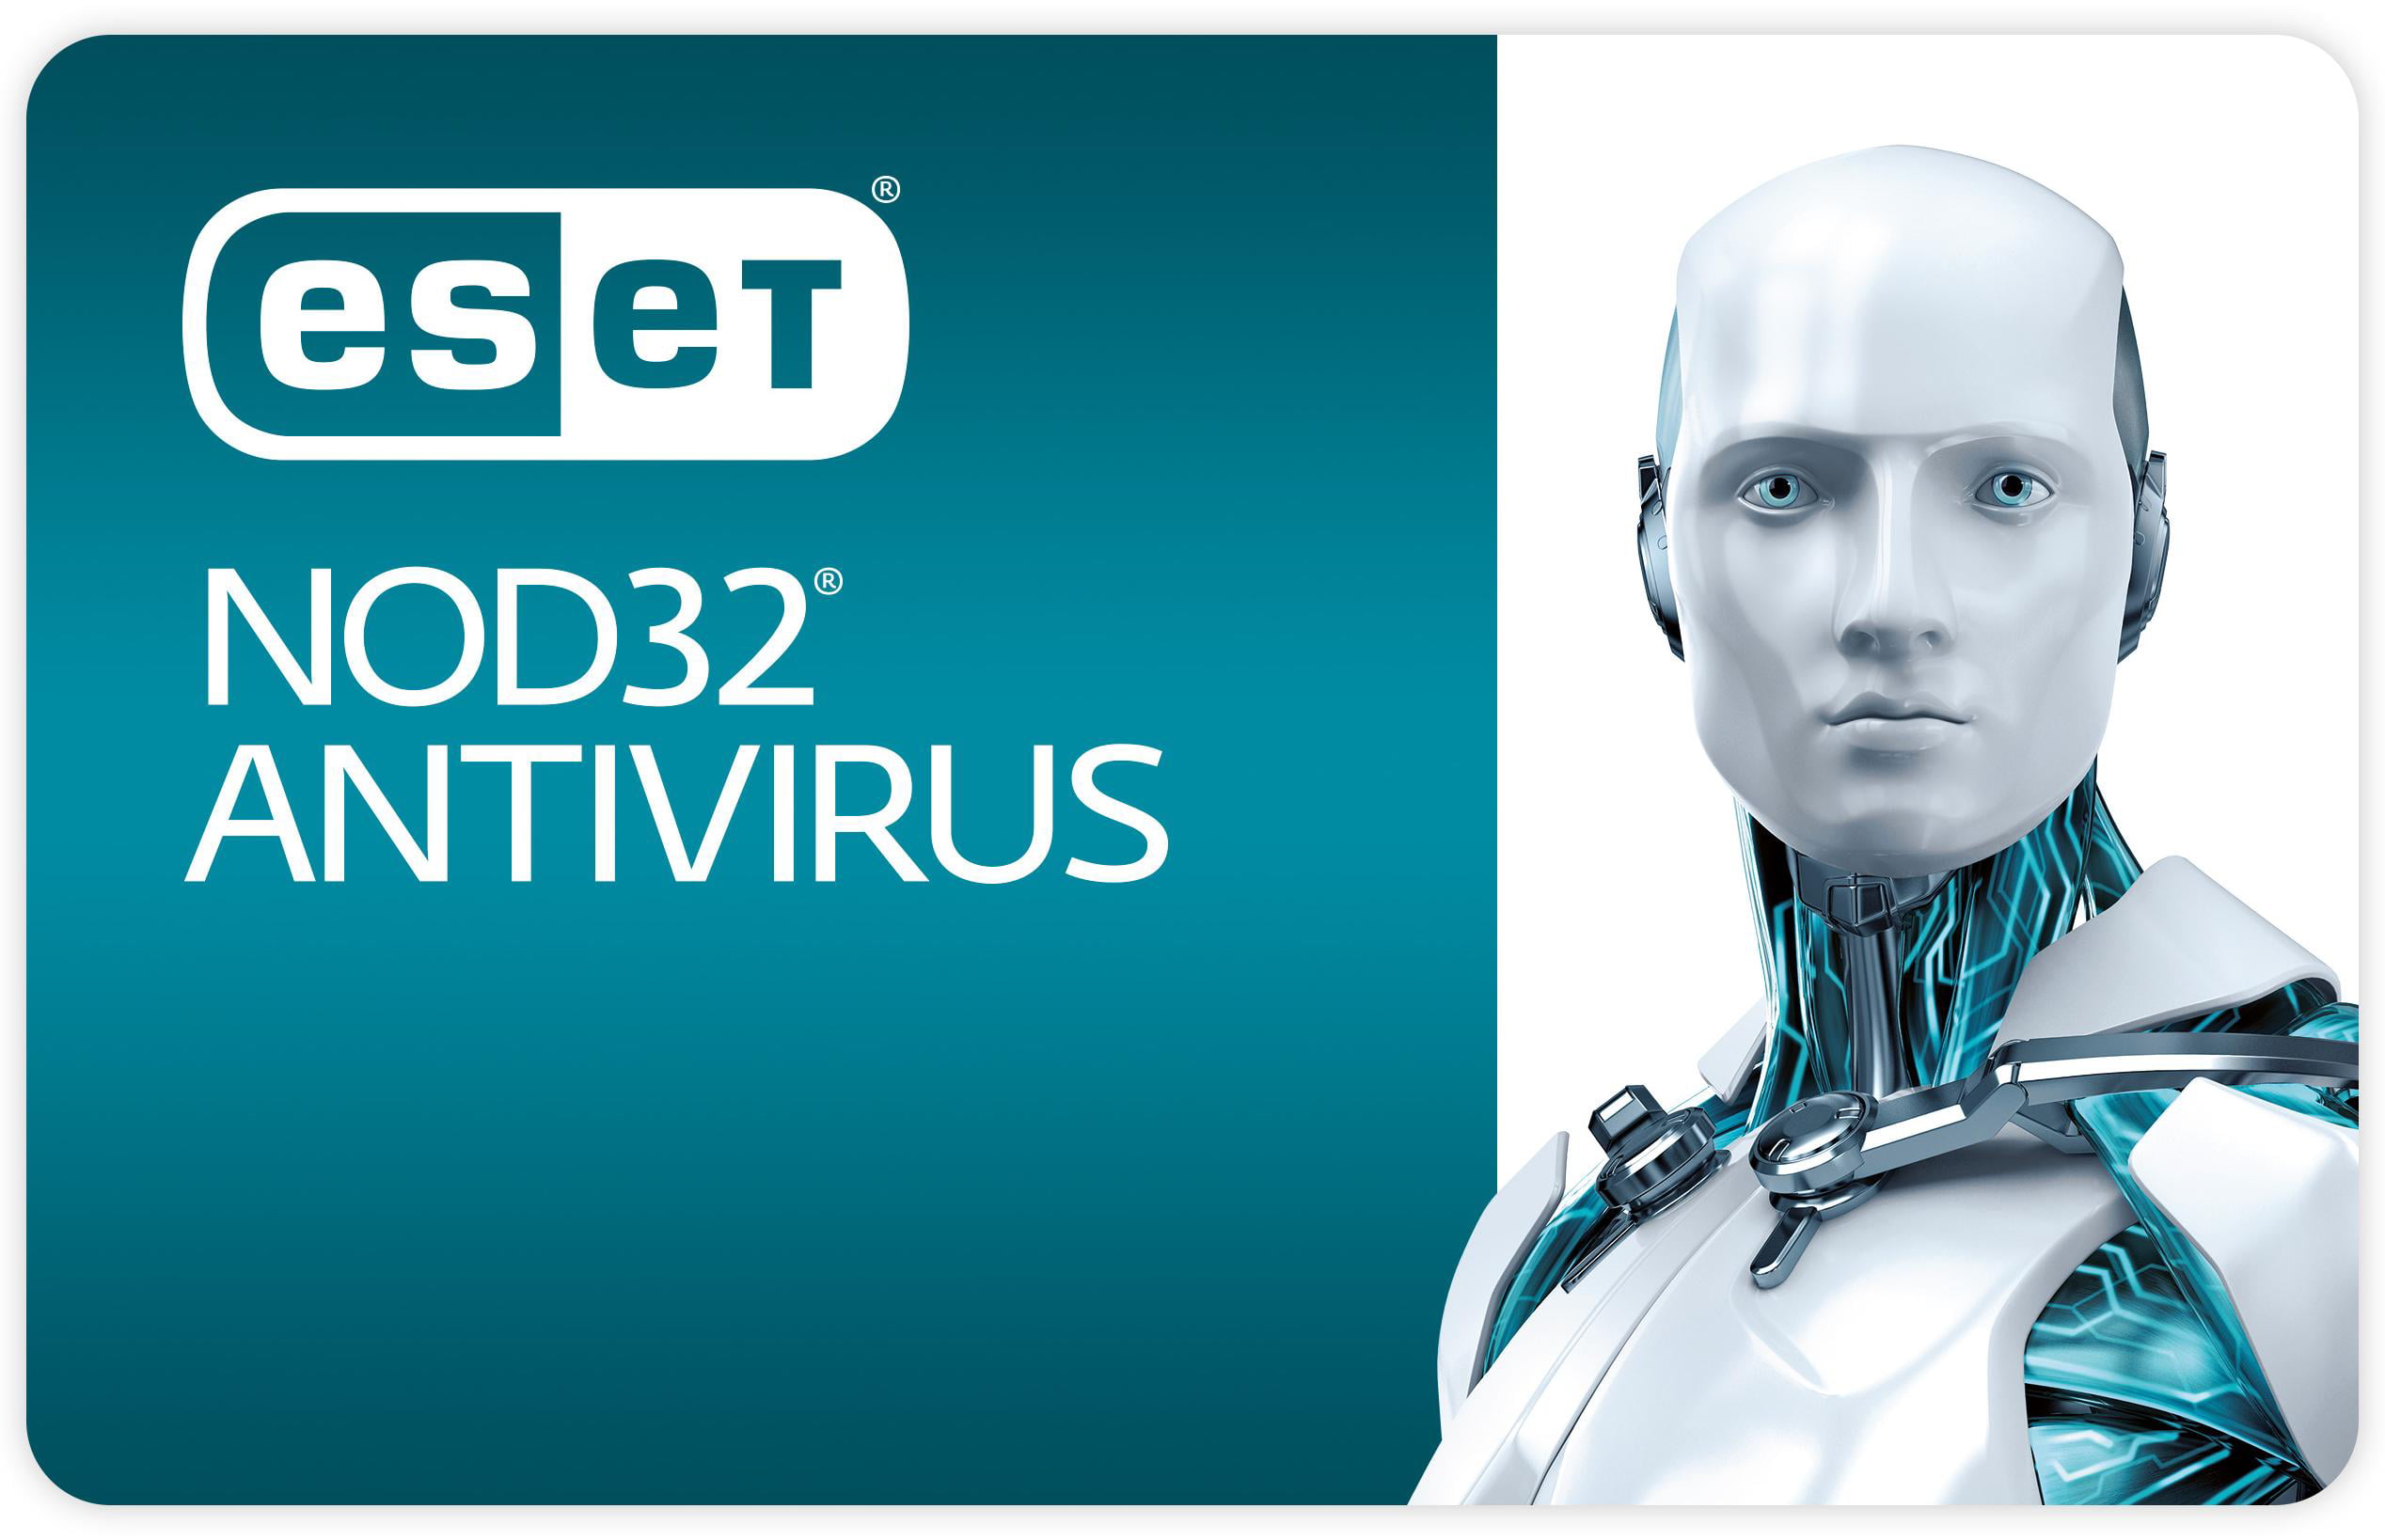 Нот антивирус. ESET nod32. Антивирус Есет НОД 32. ESET nod32 эмблема. ESET nod32 Smart Security.